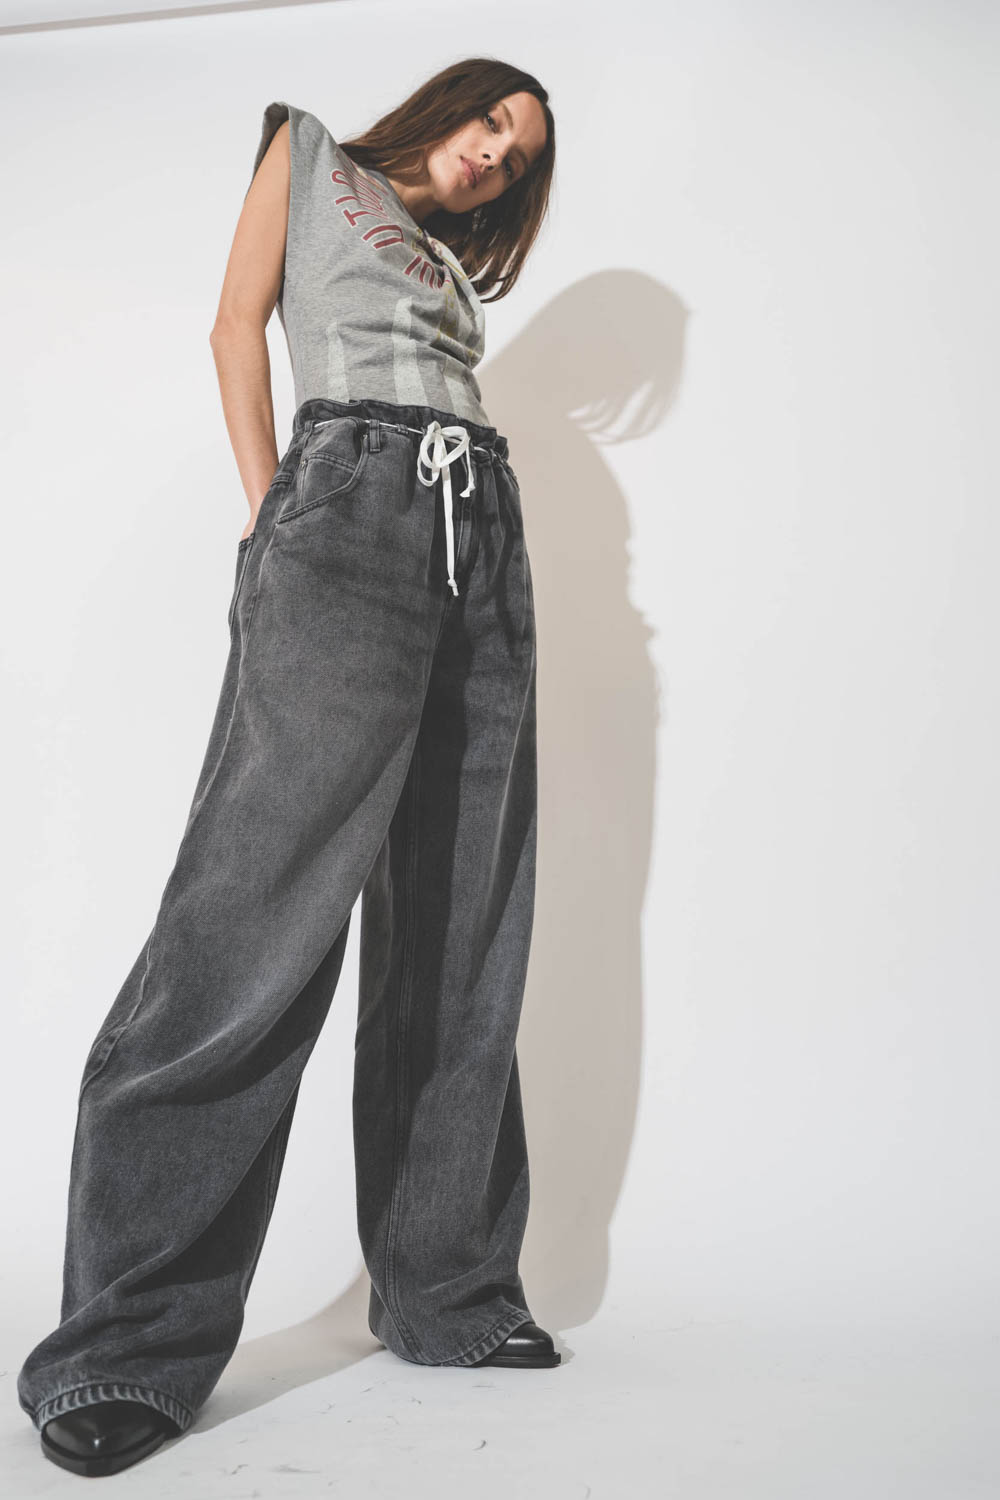 Tee-shirt sans manches col noué gris chiné imprimé révolution Nayda Isabel Marant Etoile. Porté avec un jean gris oversize.